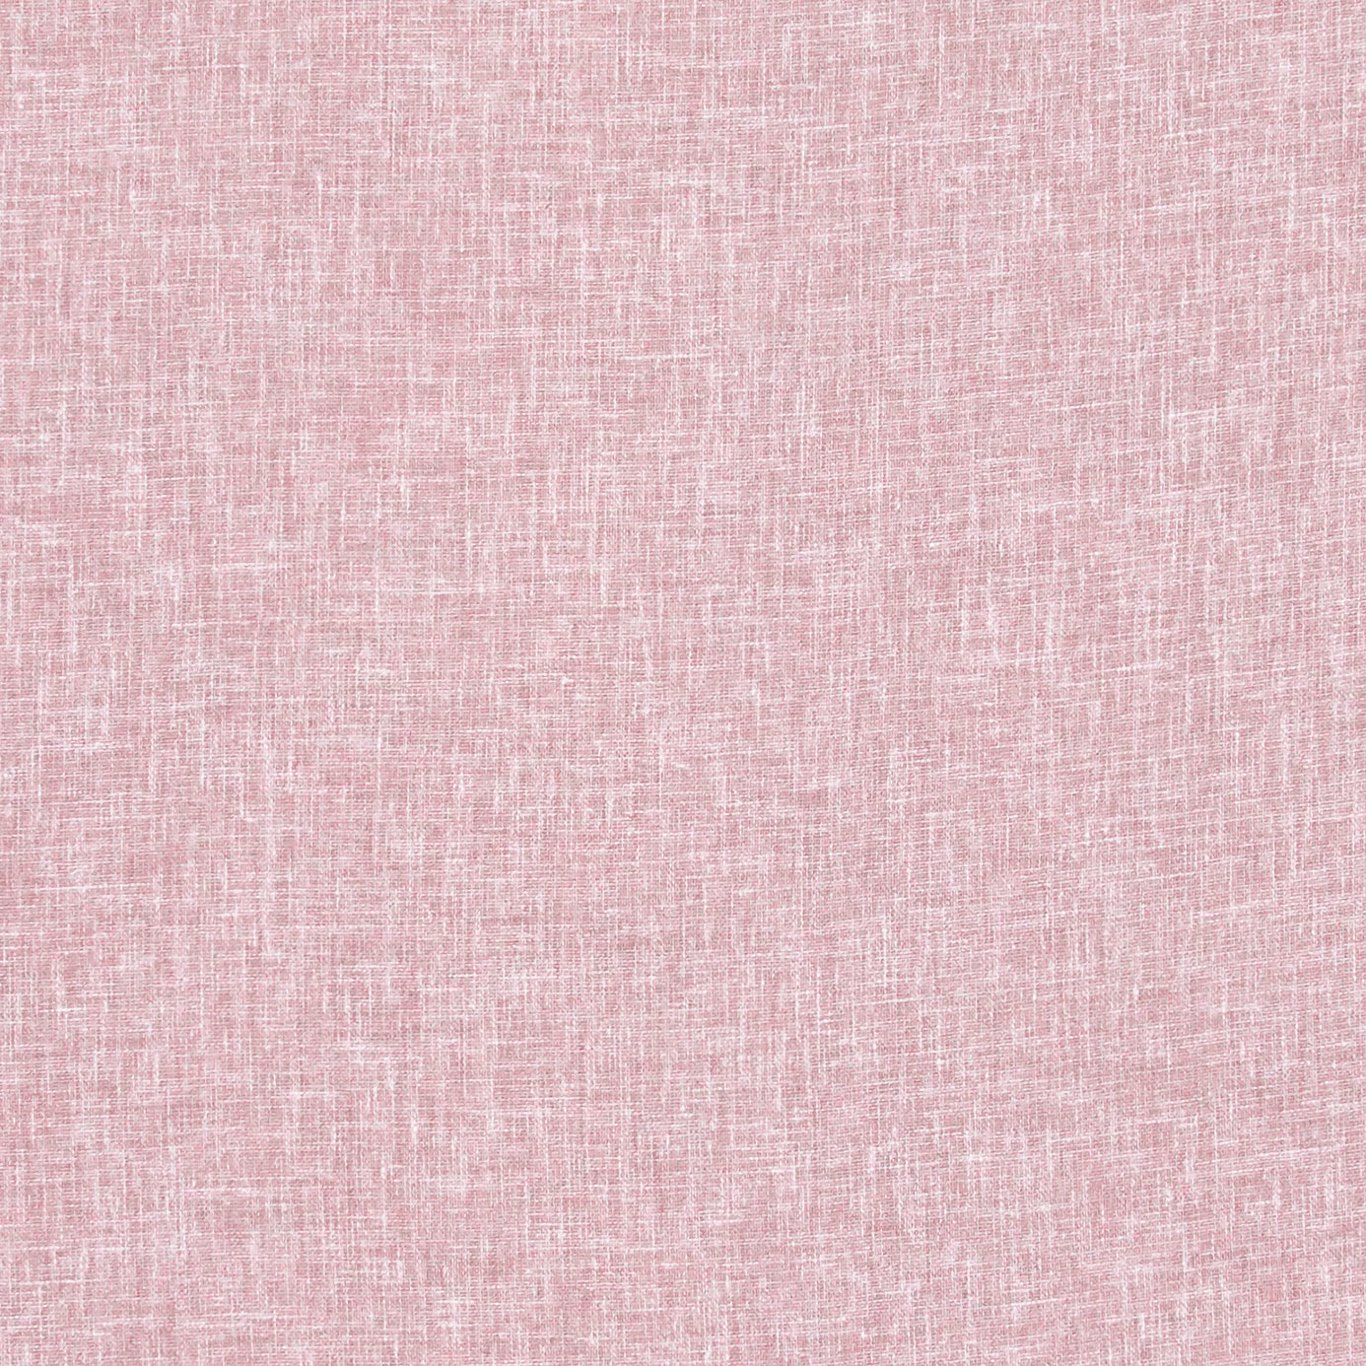 Midori Rose Fabric by CNC